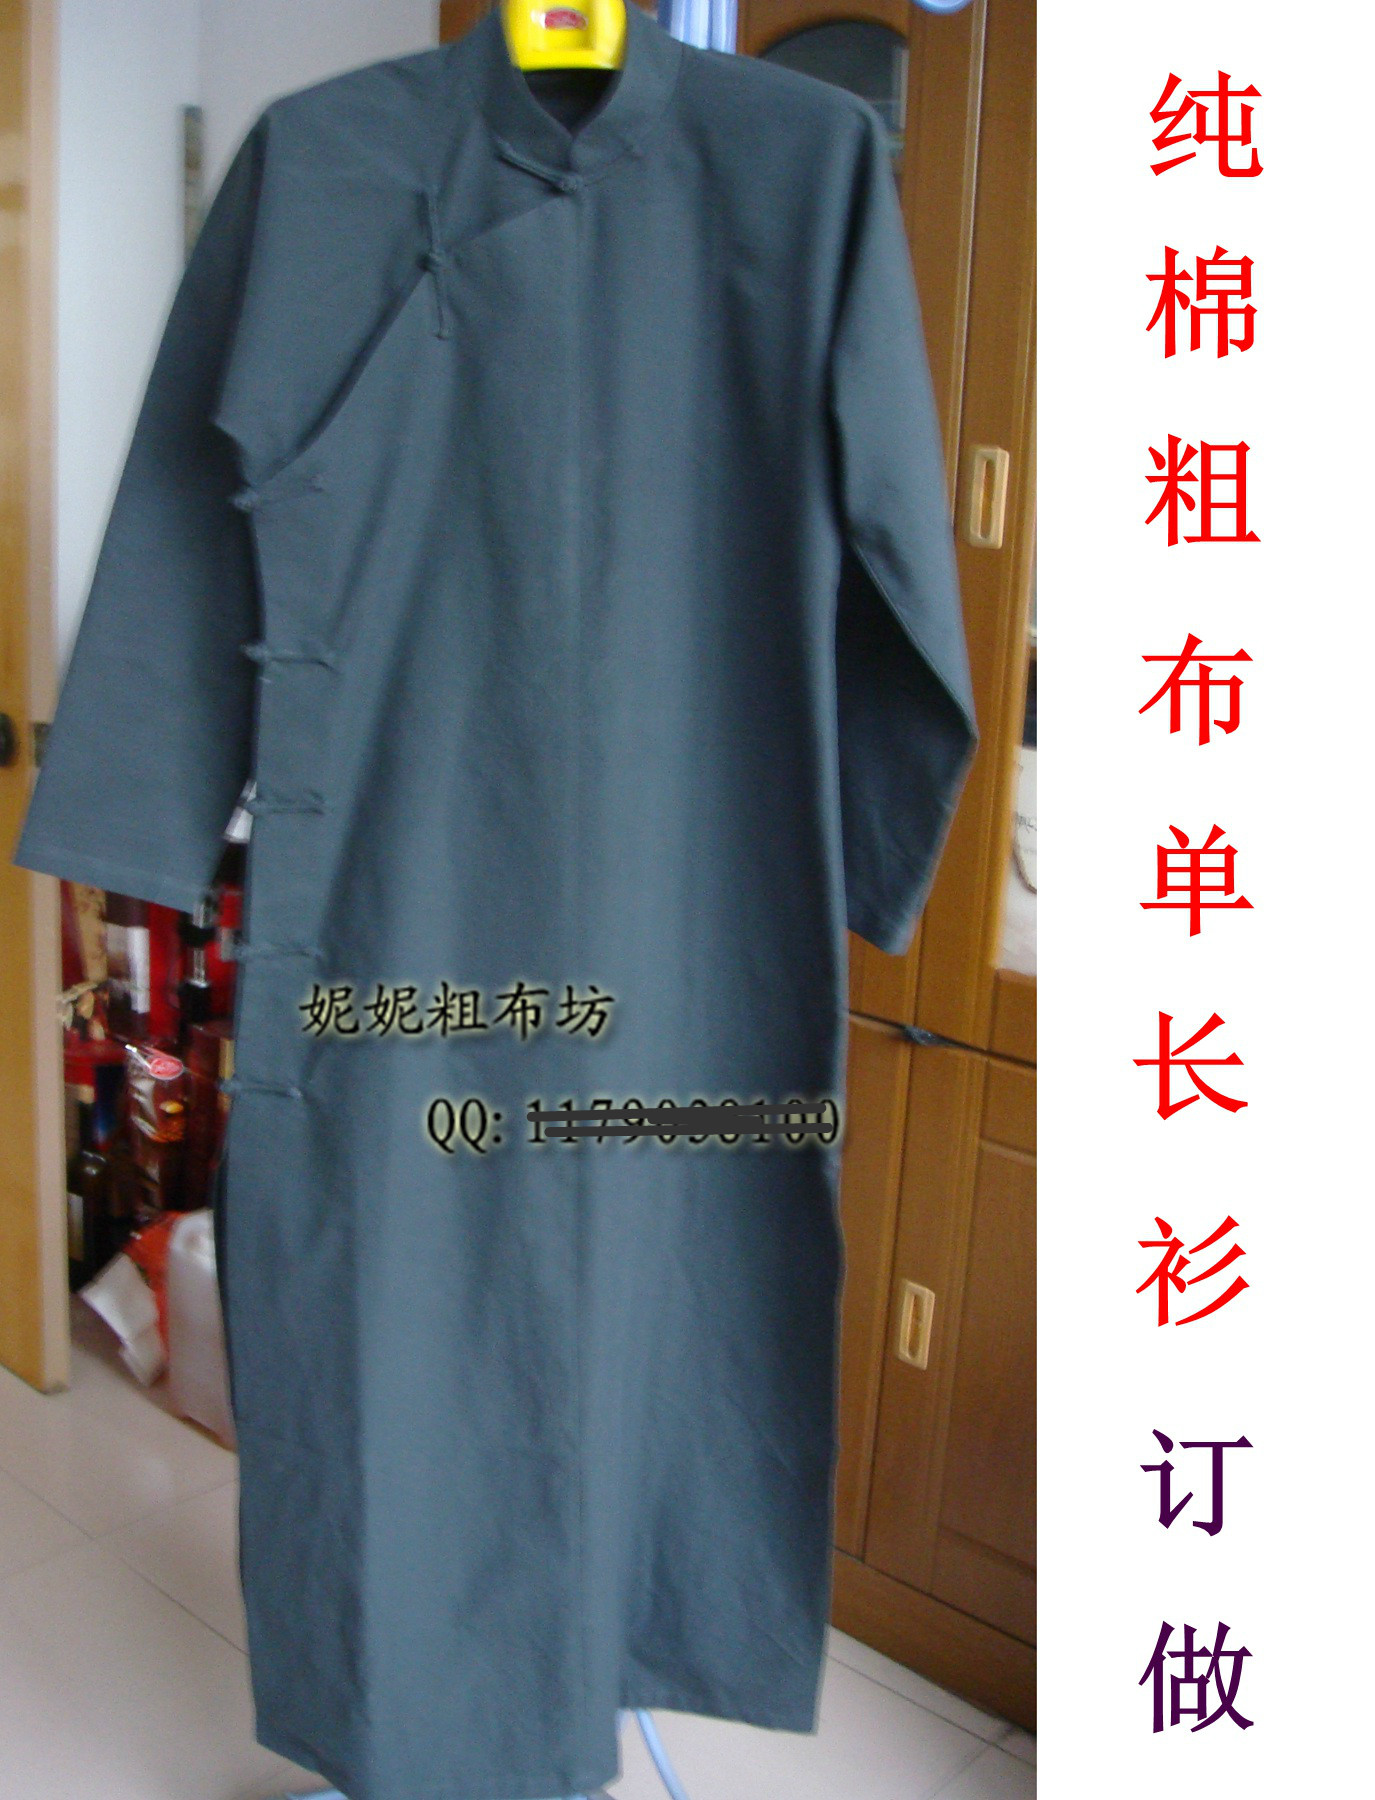 包邮纯棉粗布单长衫 长袍 相声服 民国服 订做多色中国风民族服装